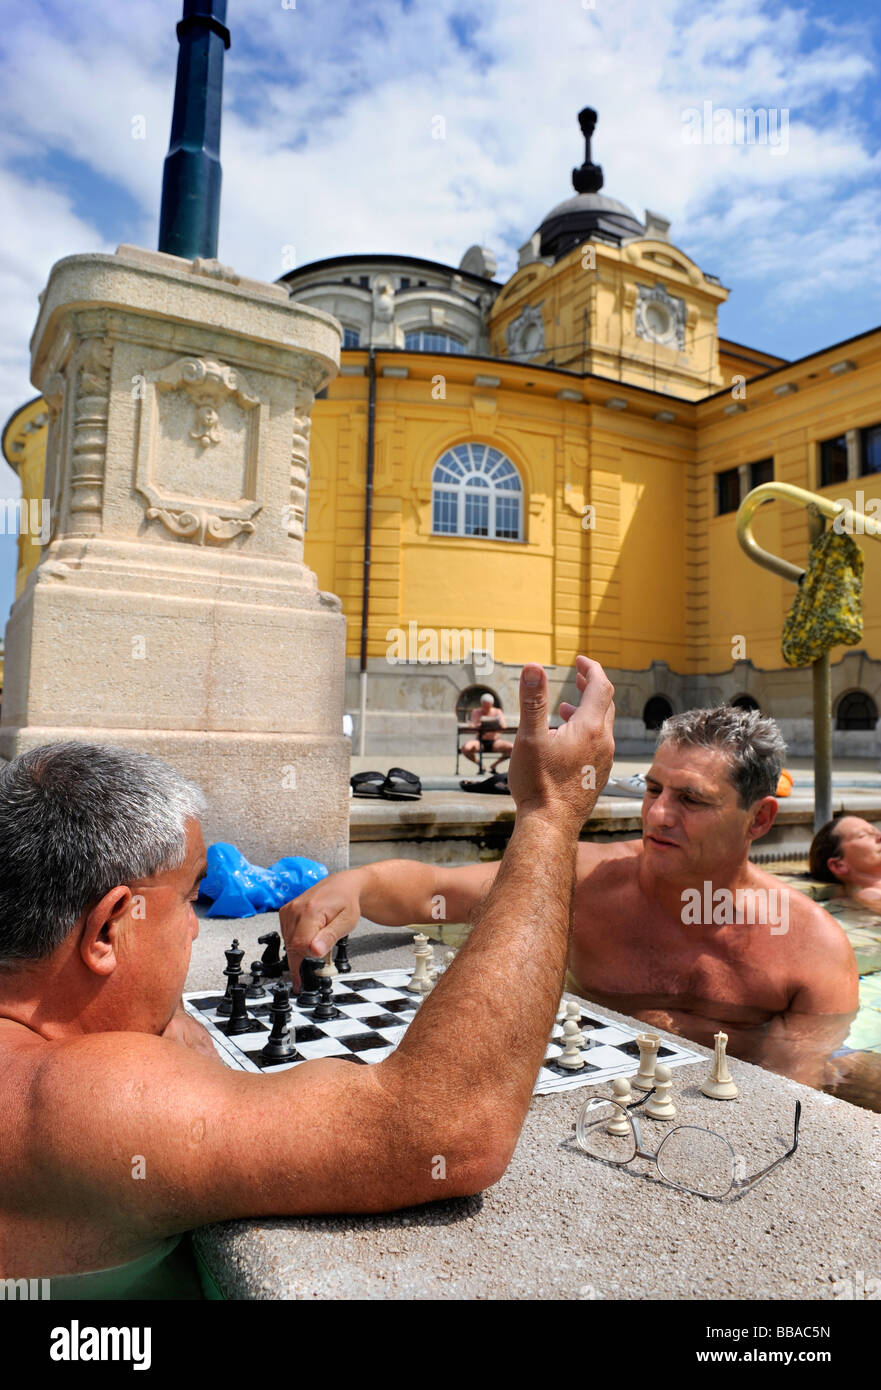 Joueurs d'échecs au Bain Széchenyi à Budapest Hongrie Banque D'Images